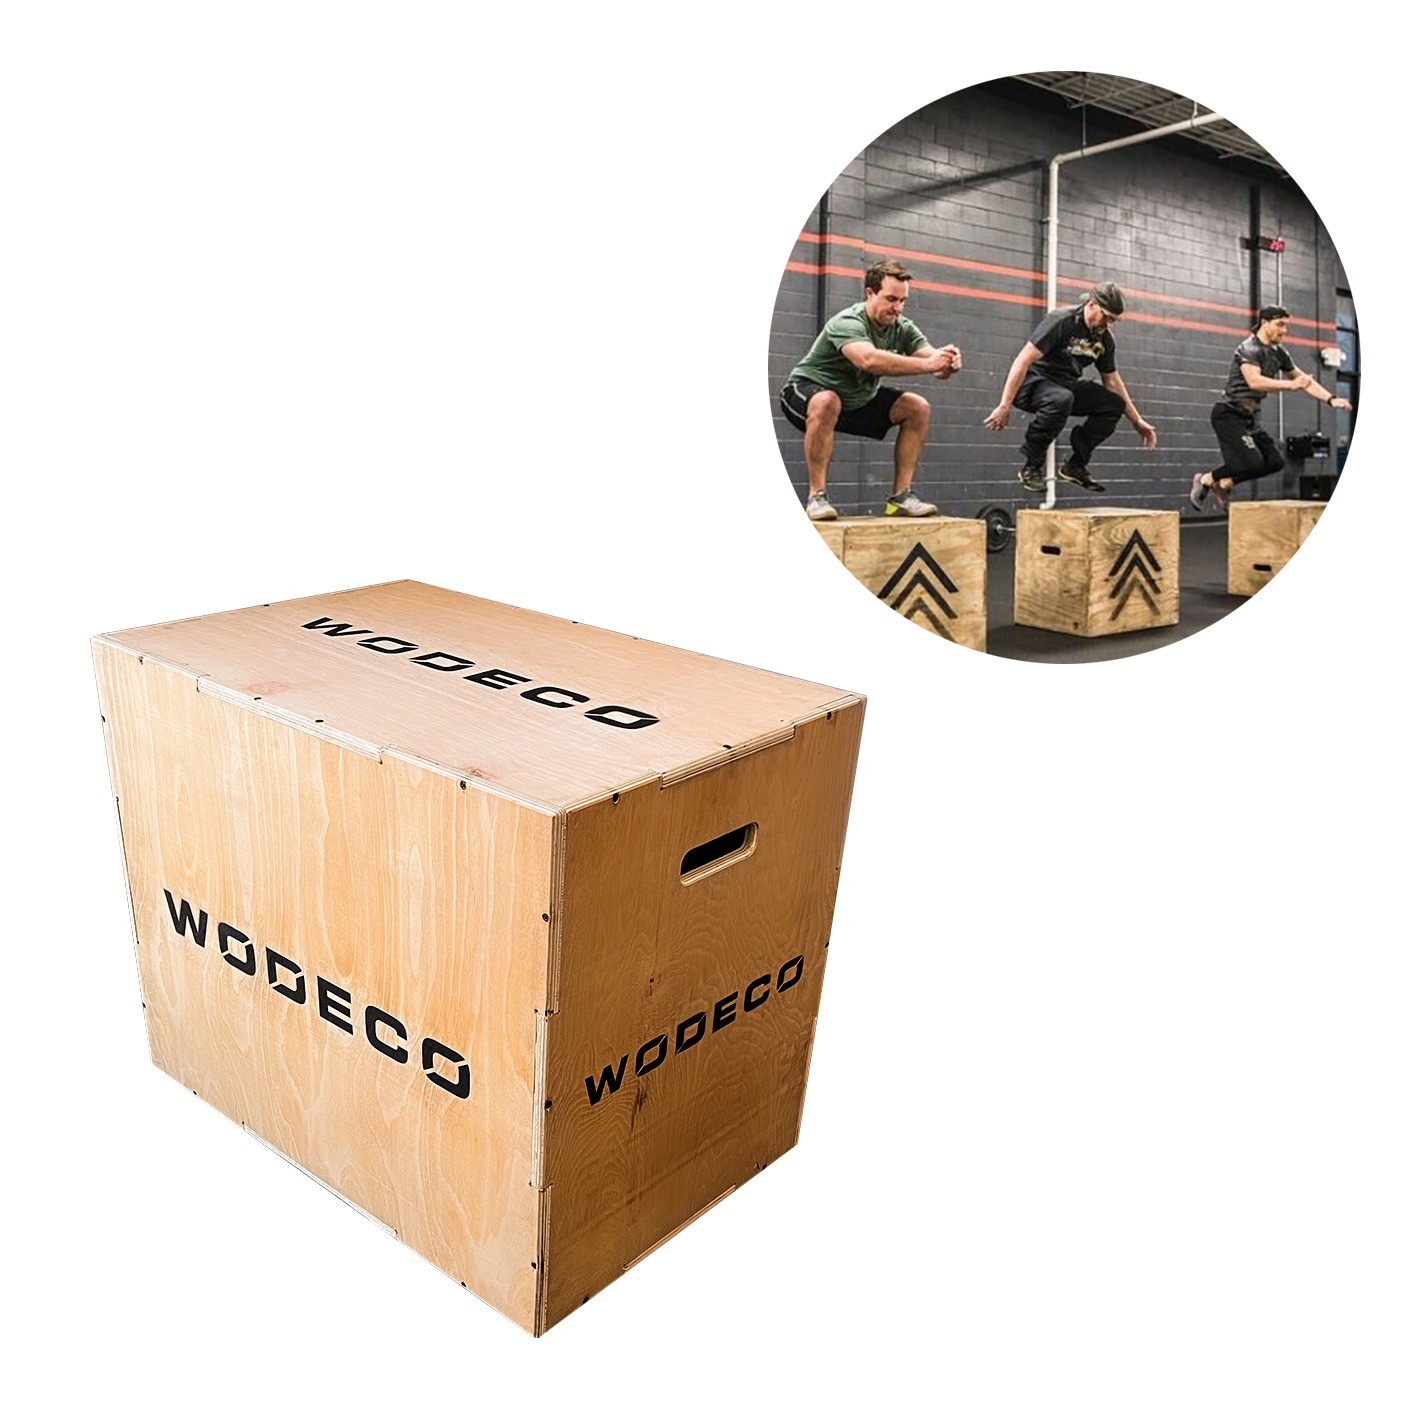 Fitness Təlimi Üçün Jump Box İdman Aləti Wodeco Outdoor